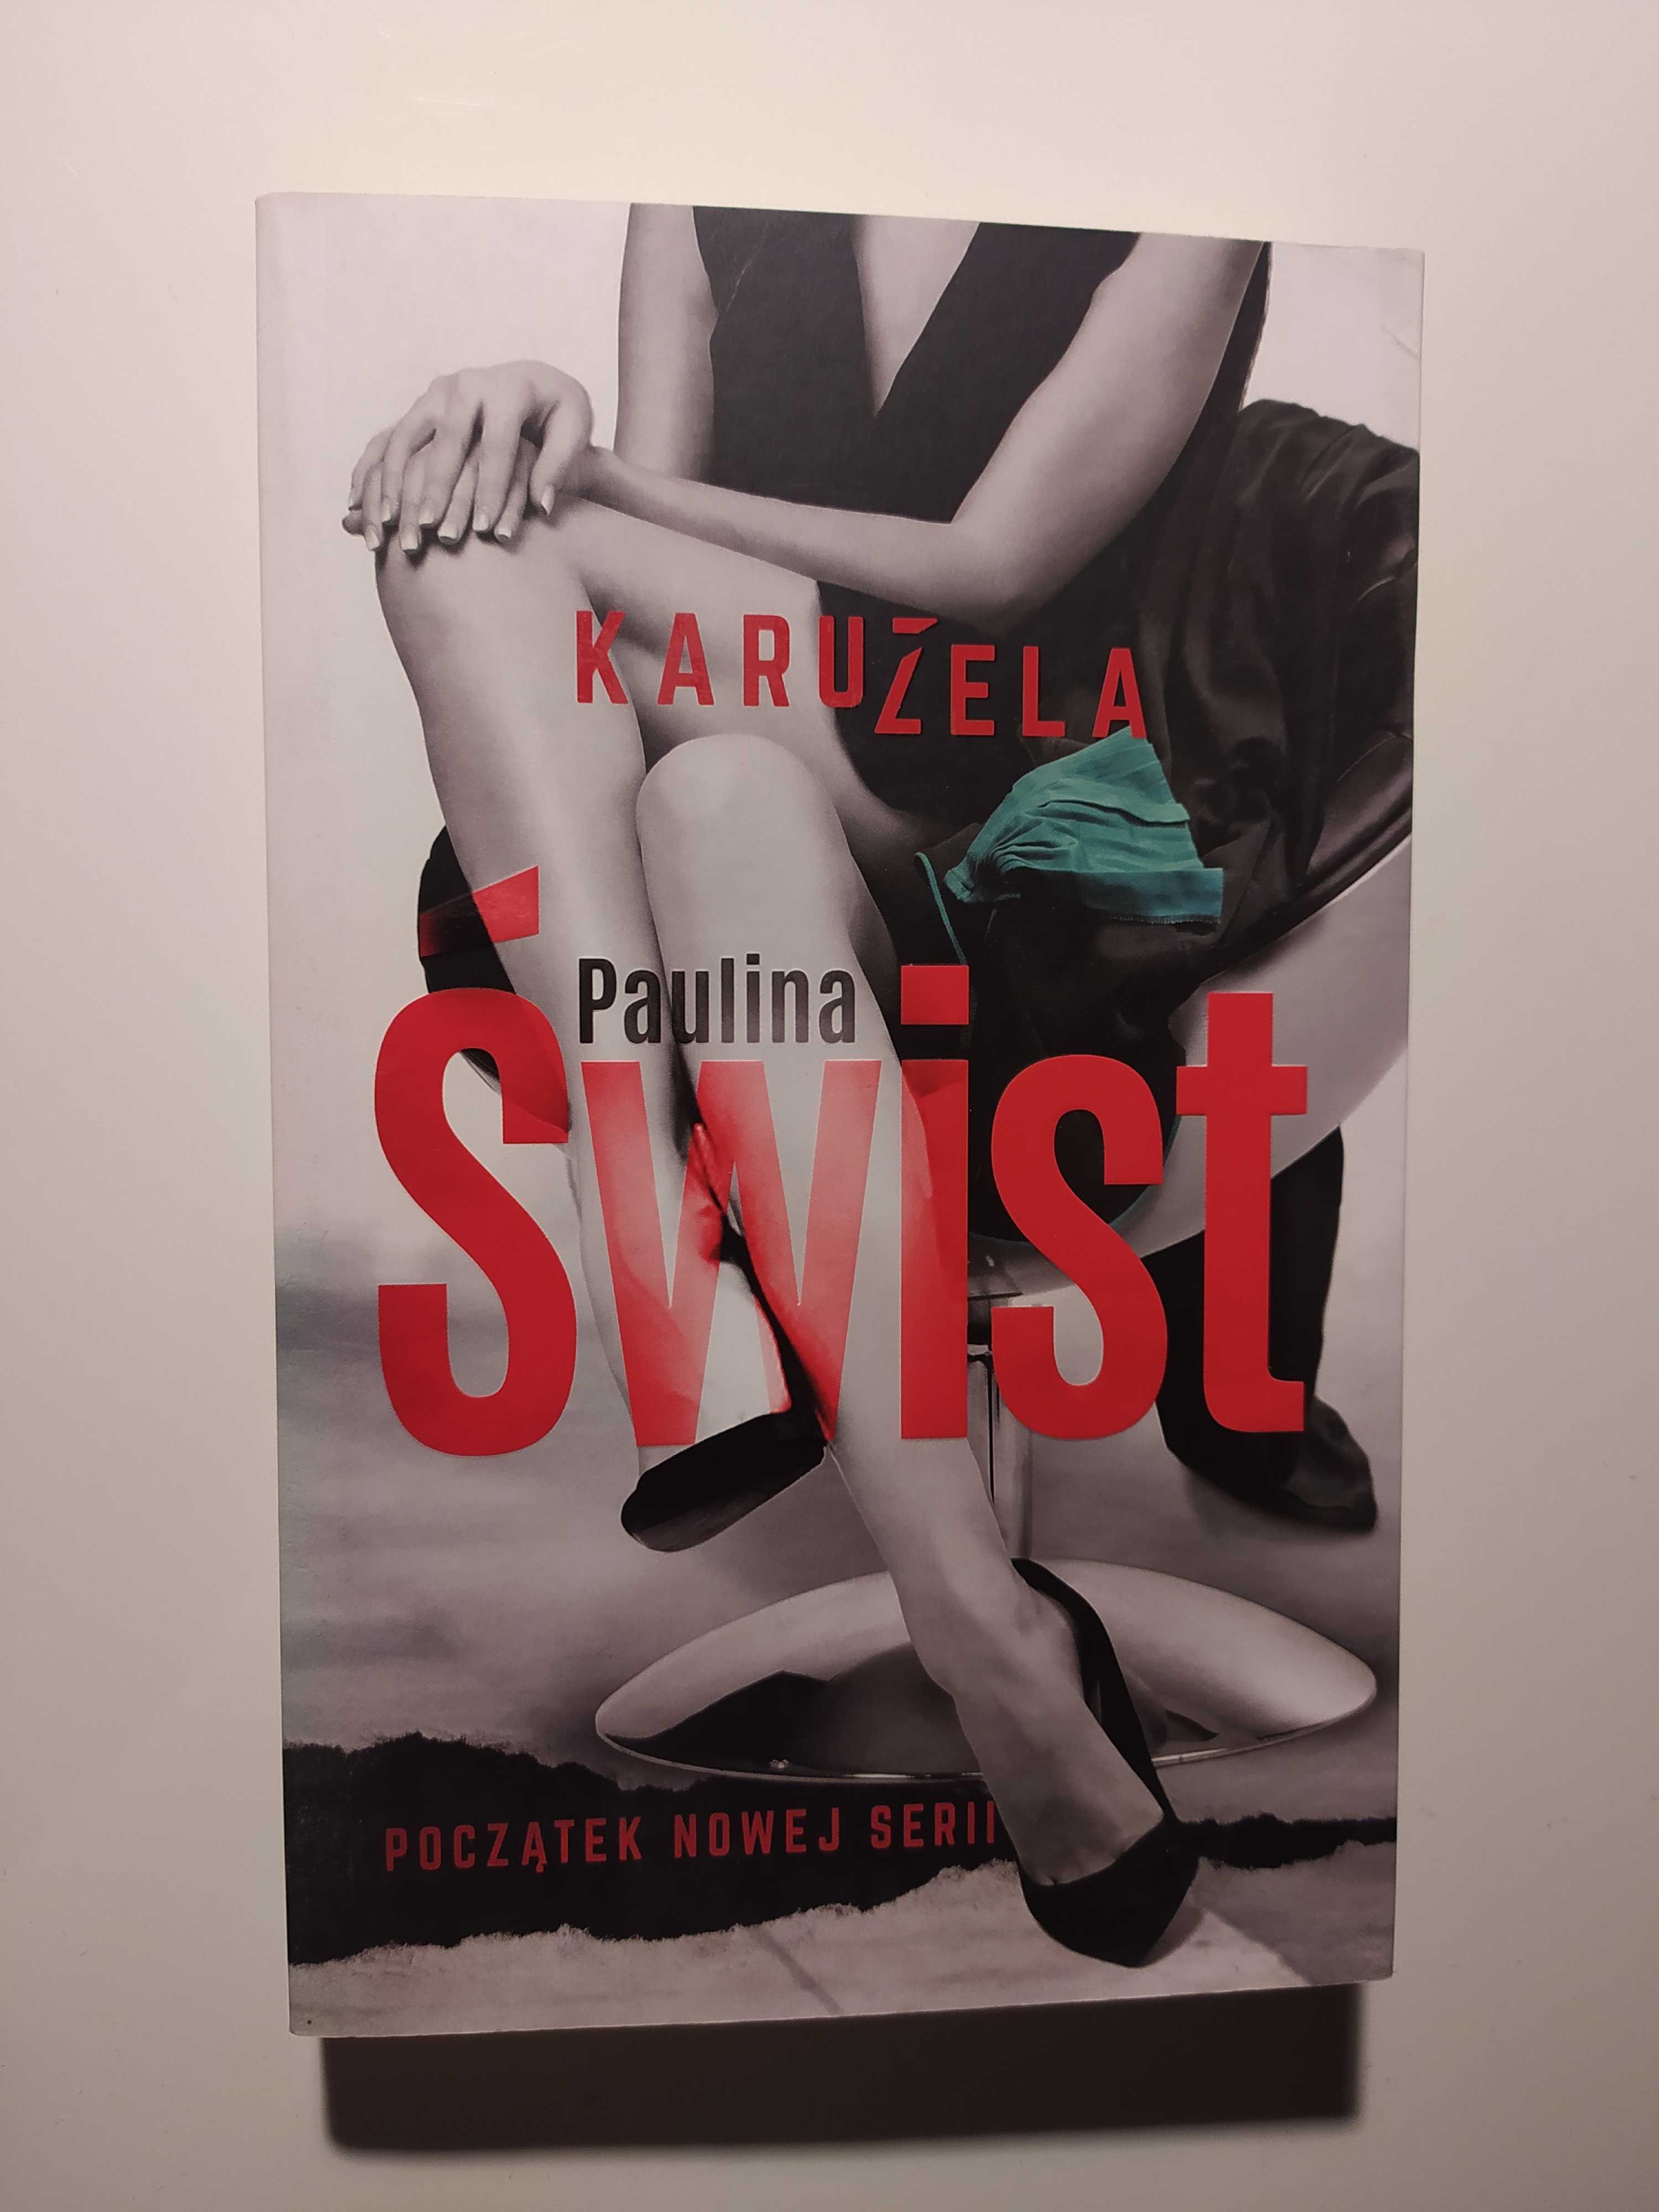 Książka - Karuzela (Paulina Świst)